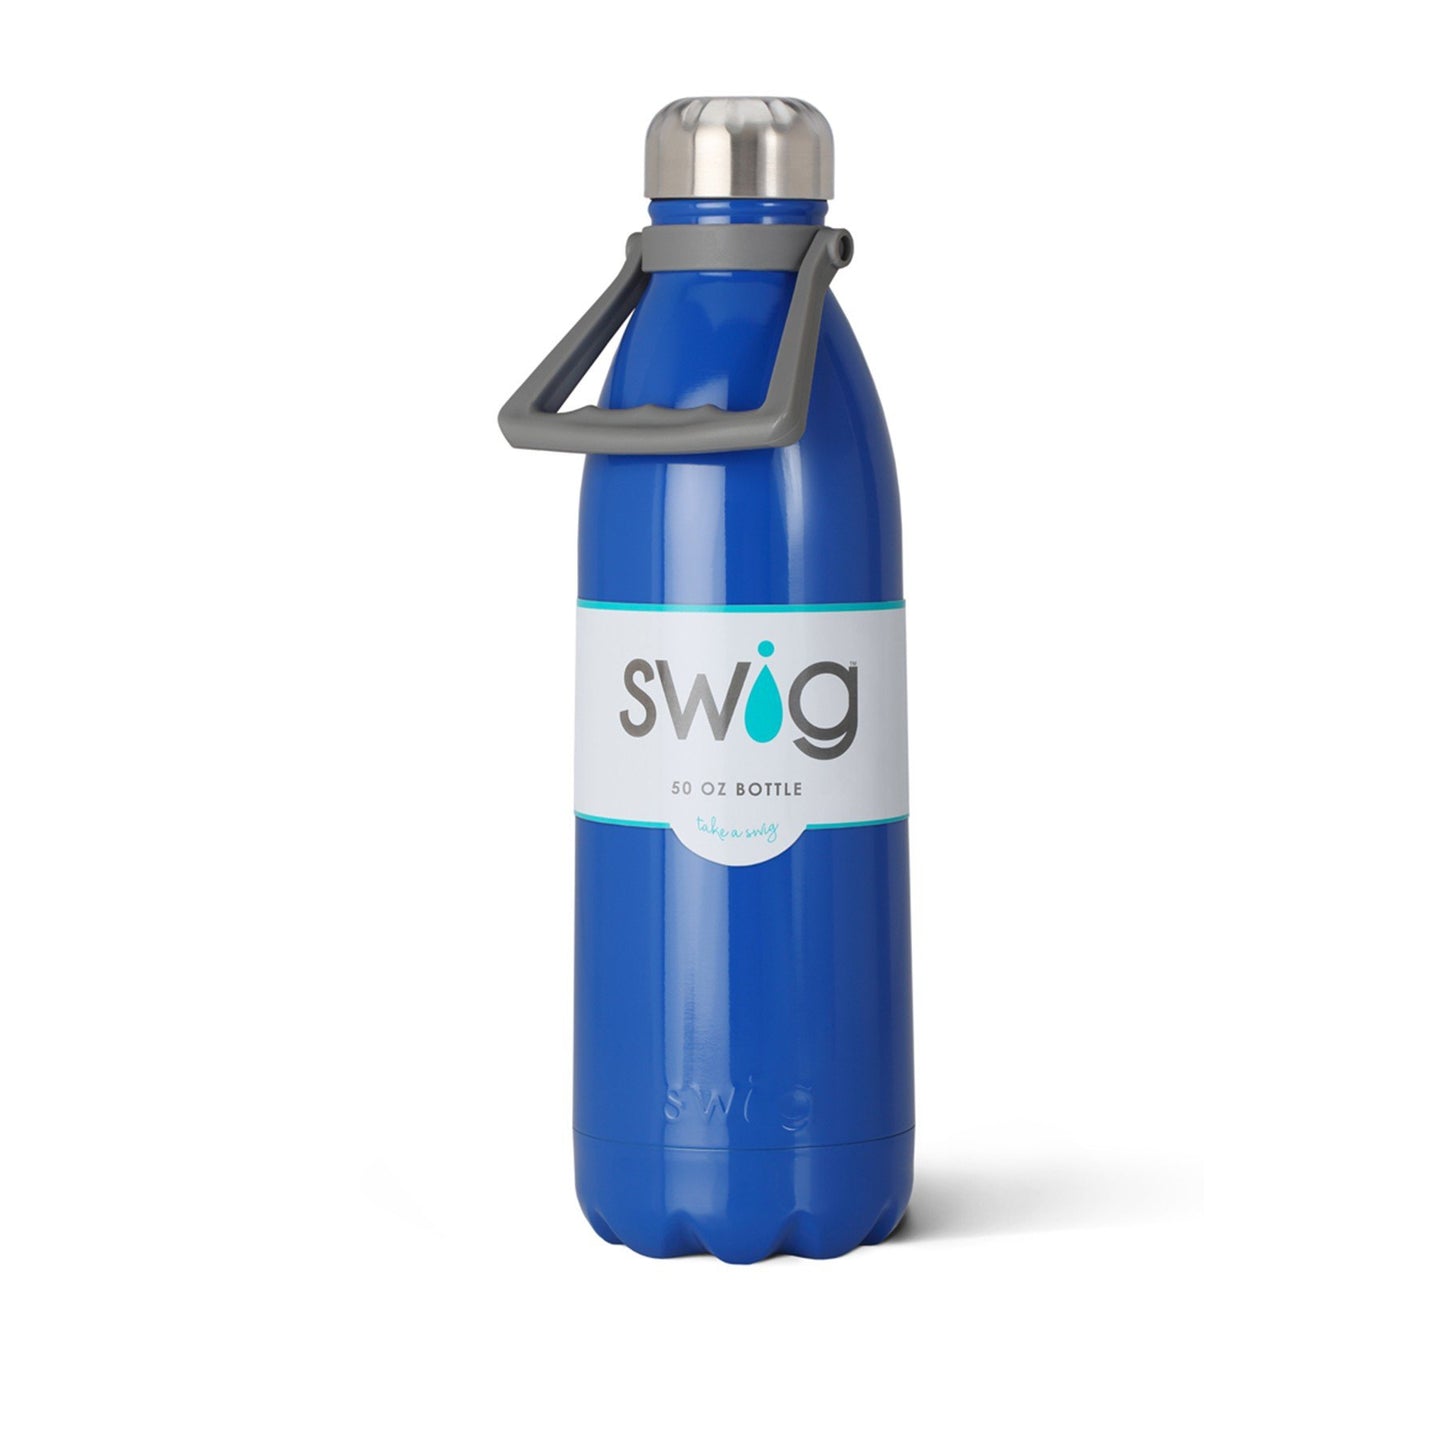 Swig 50oz Bottle